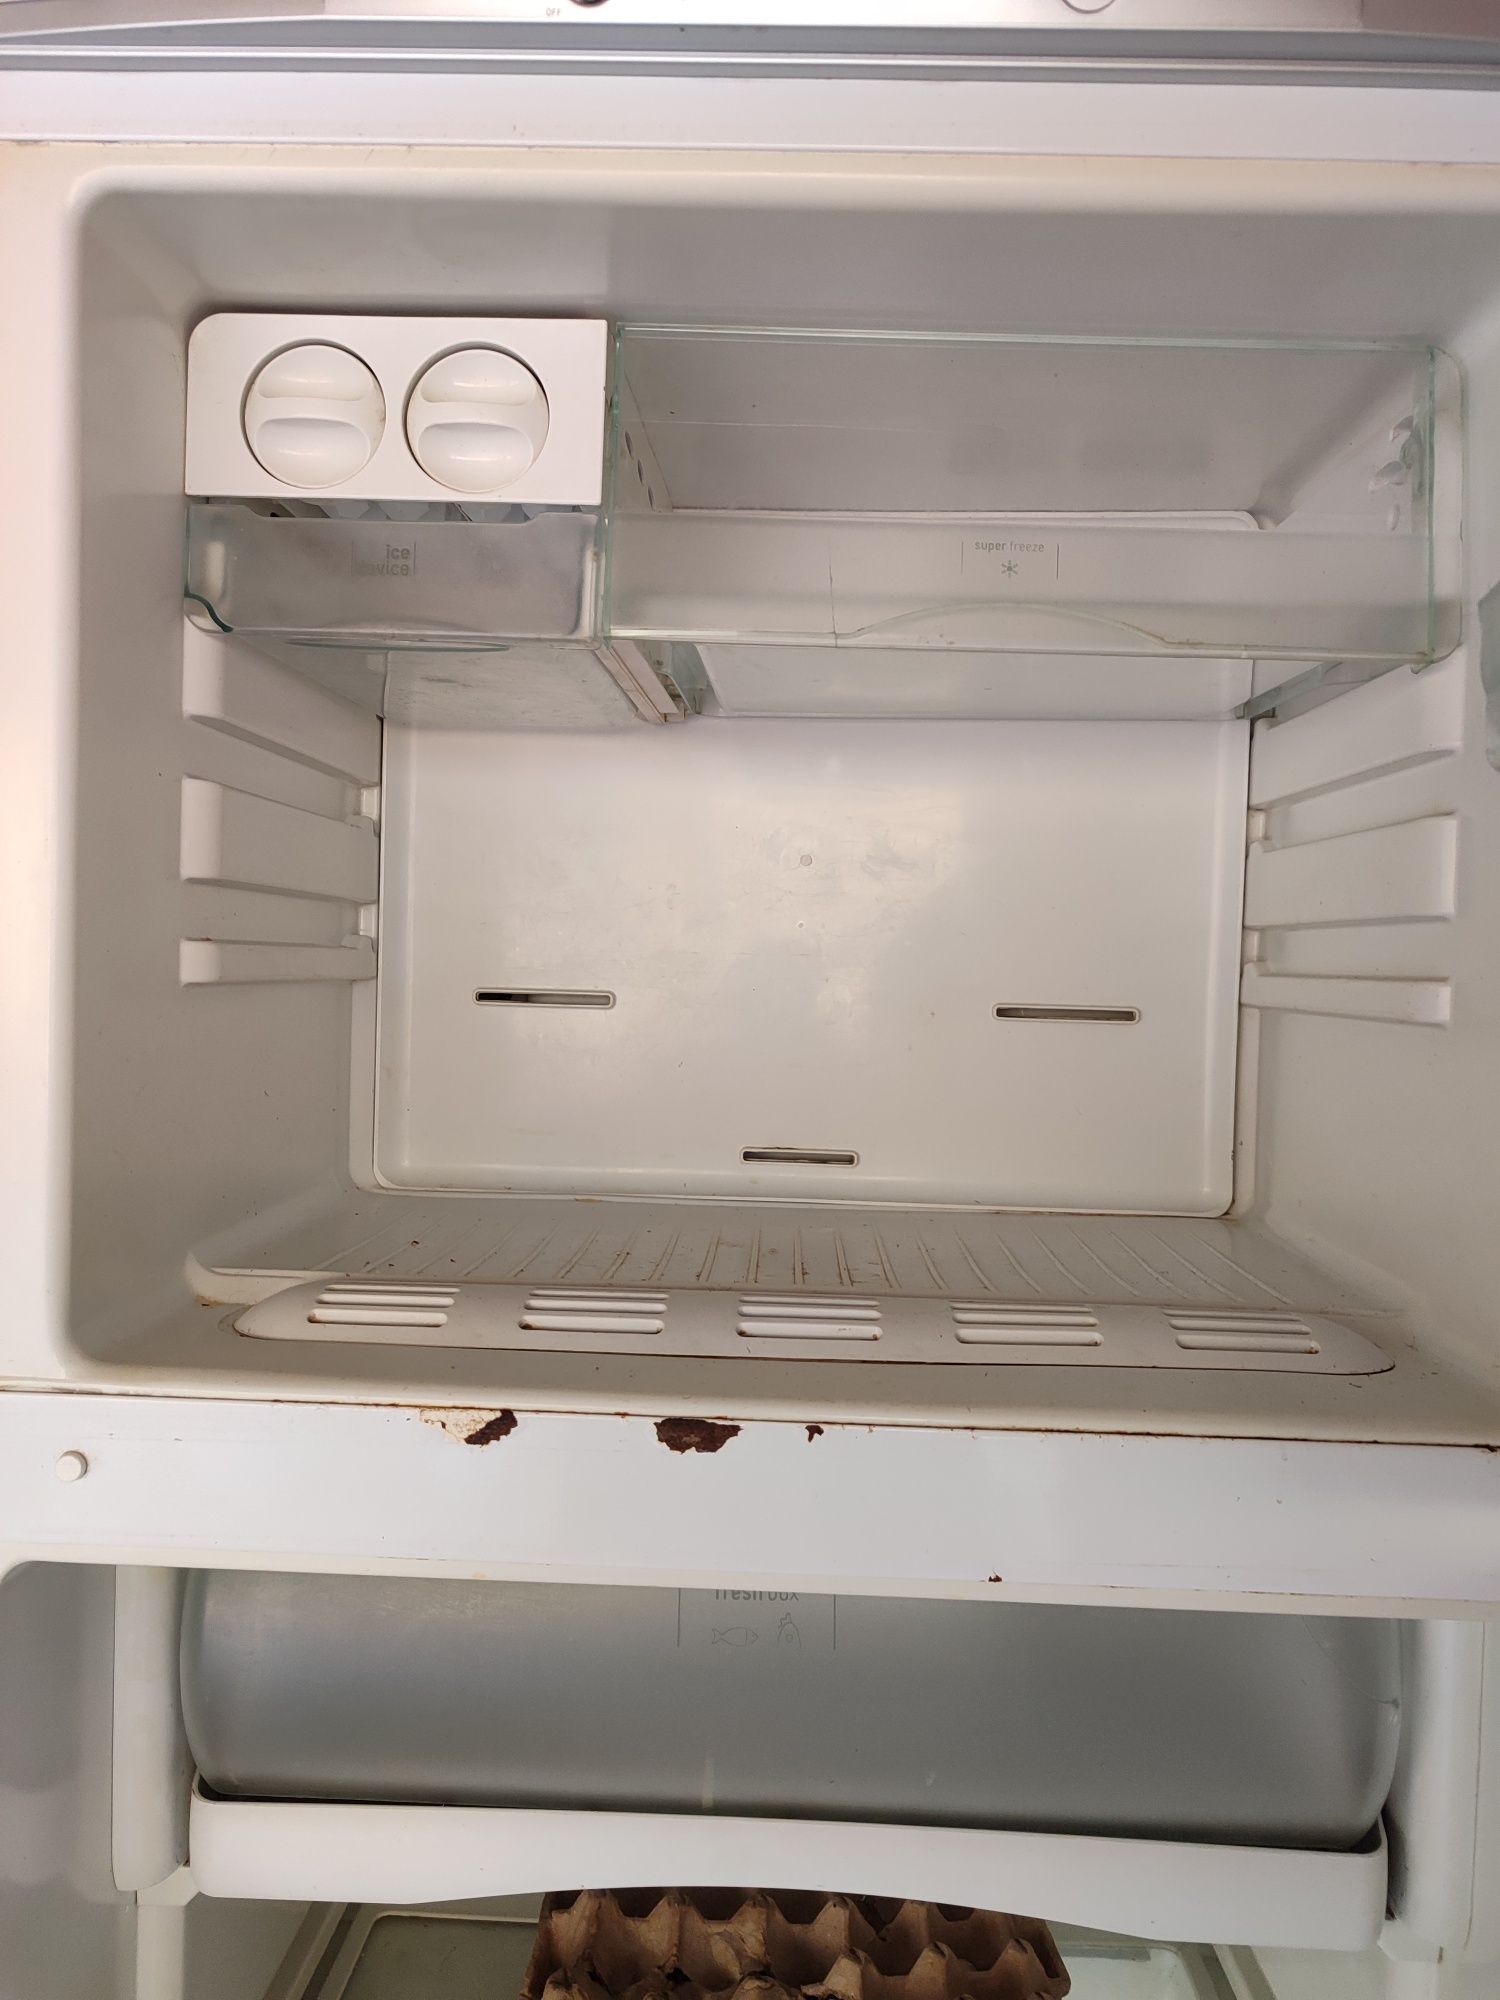 Холодильник Аристон